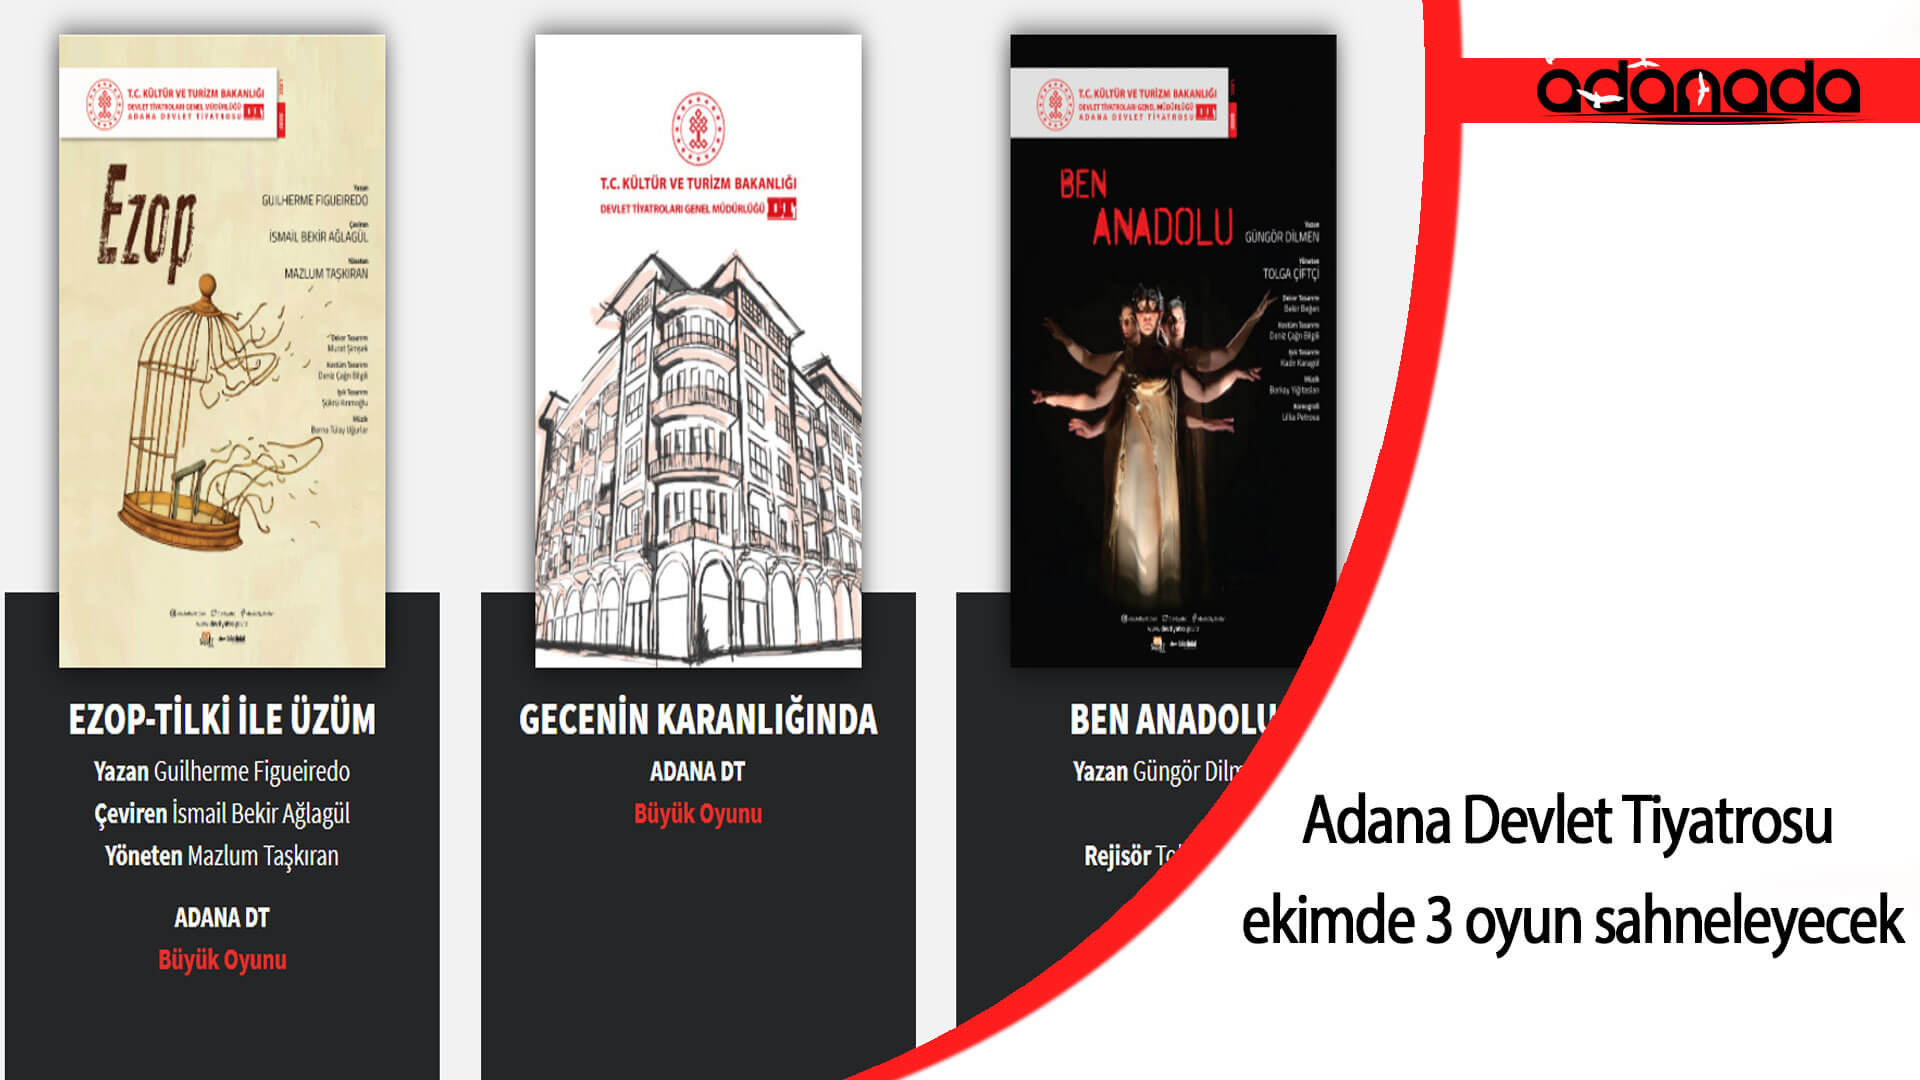 Adana Devlet Tiyatrosu ekimde 3 oyun sahneleyecek